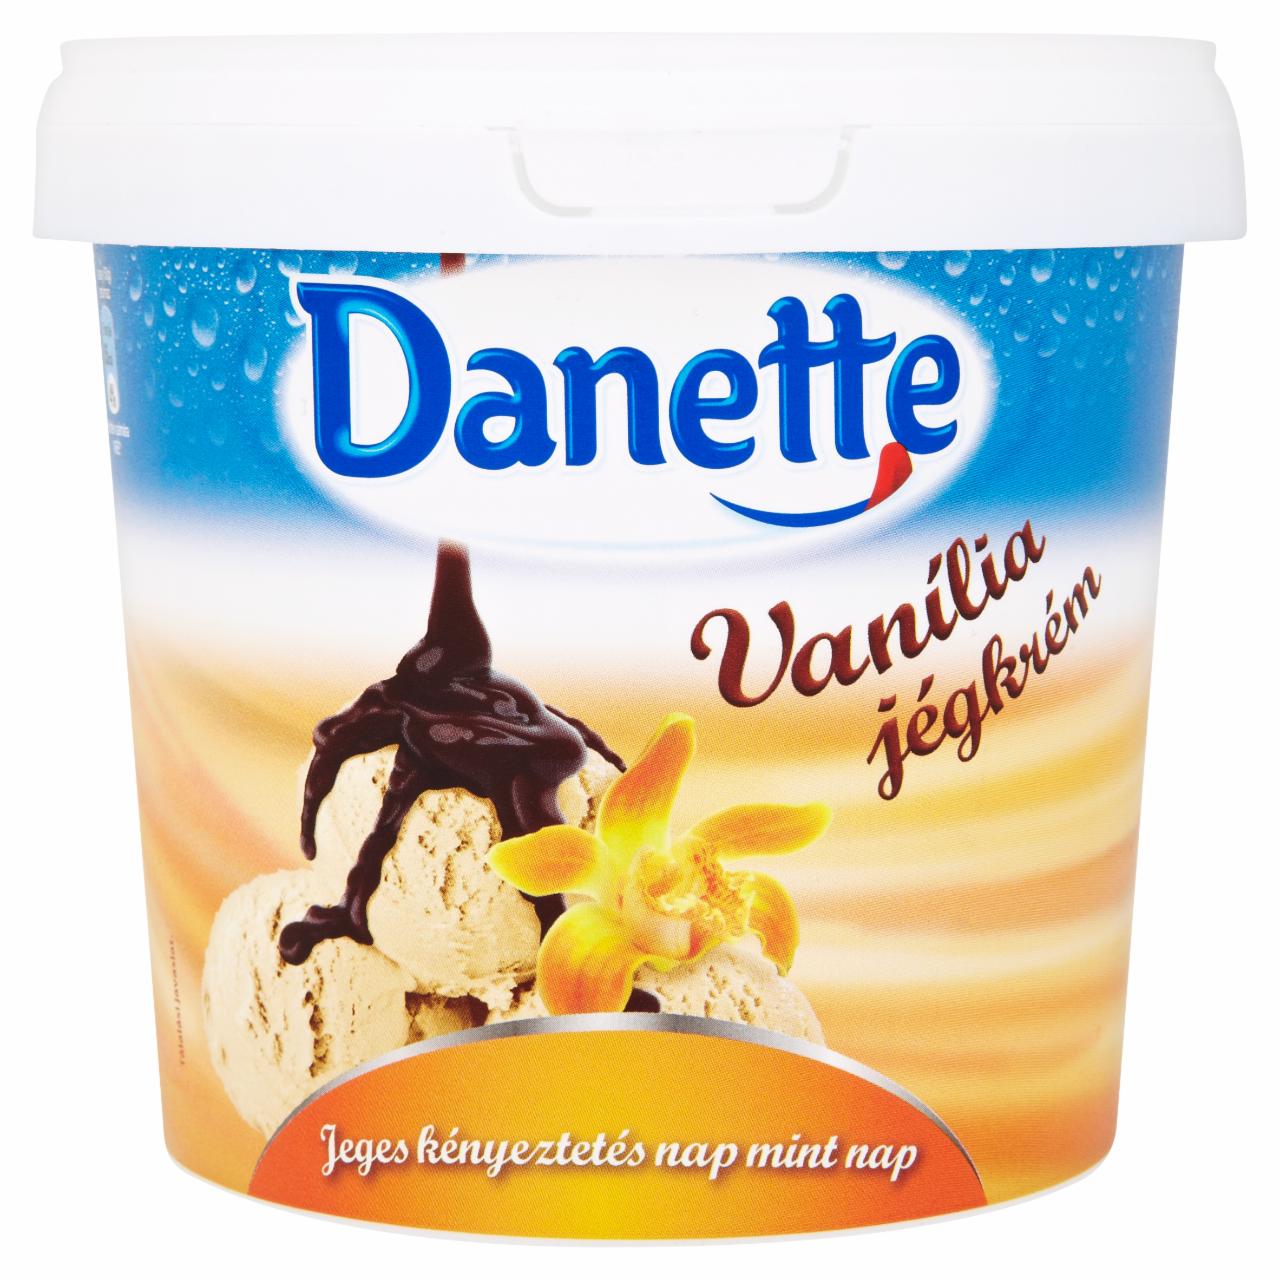 Képek - Danette vaníliás jégkrém csokoládéízű öntettel 1000 ml